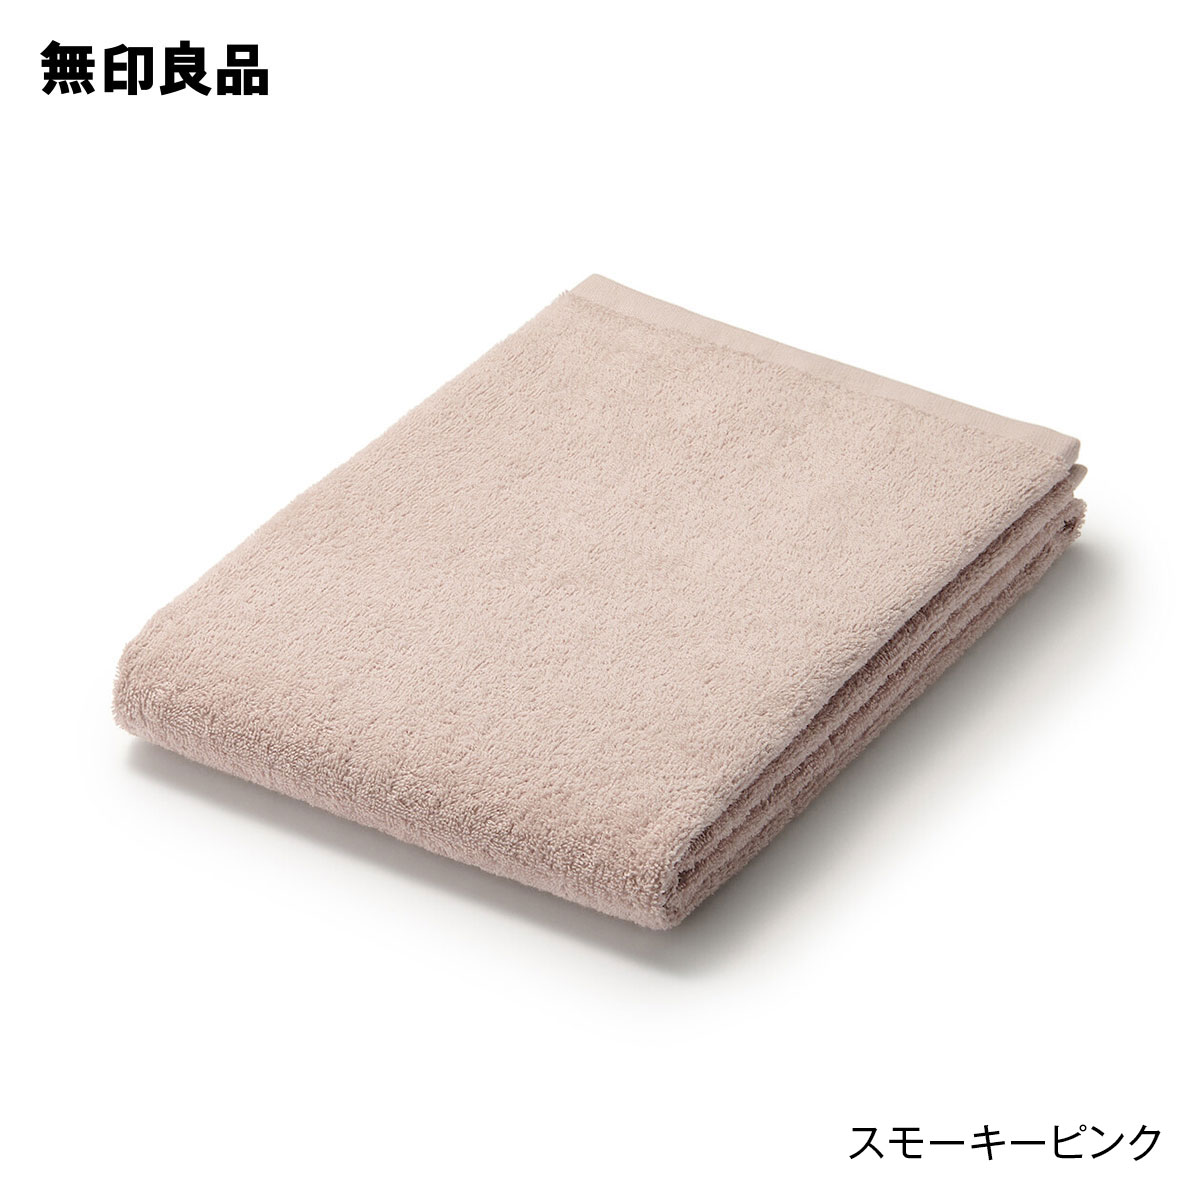 【無印良品 公式】パイル織り2枚組ロングタオル・4枚組・34×110cm